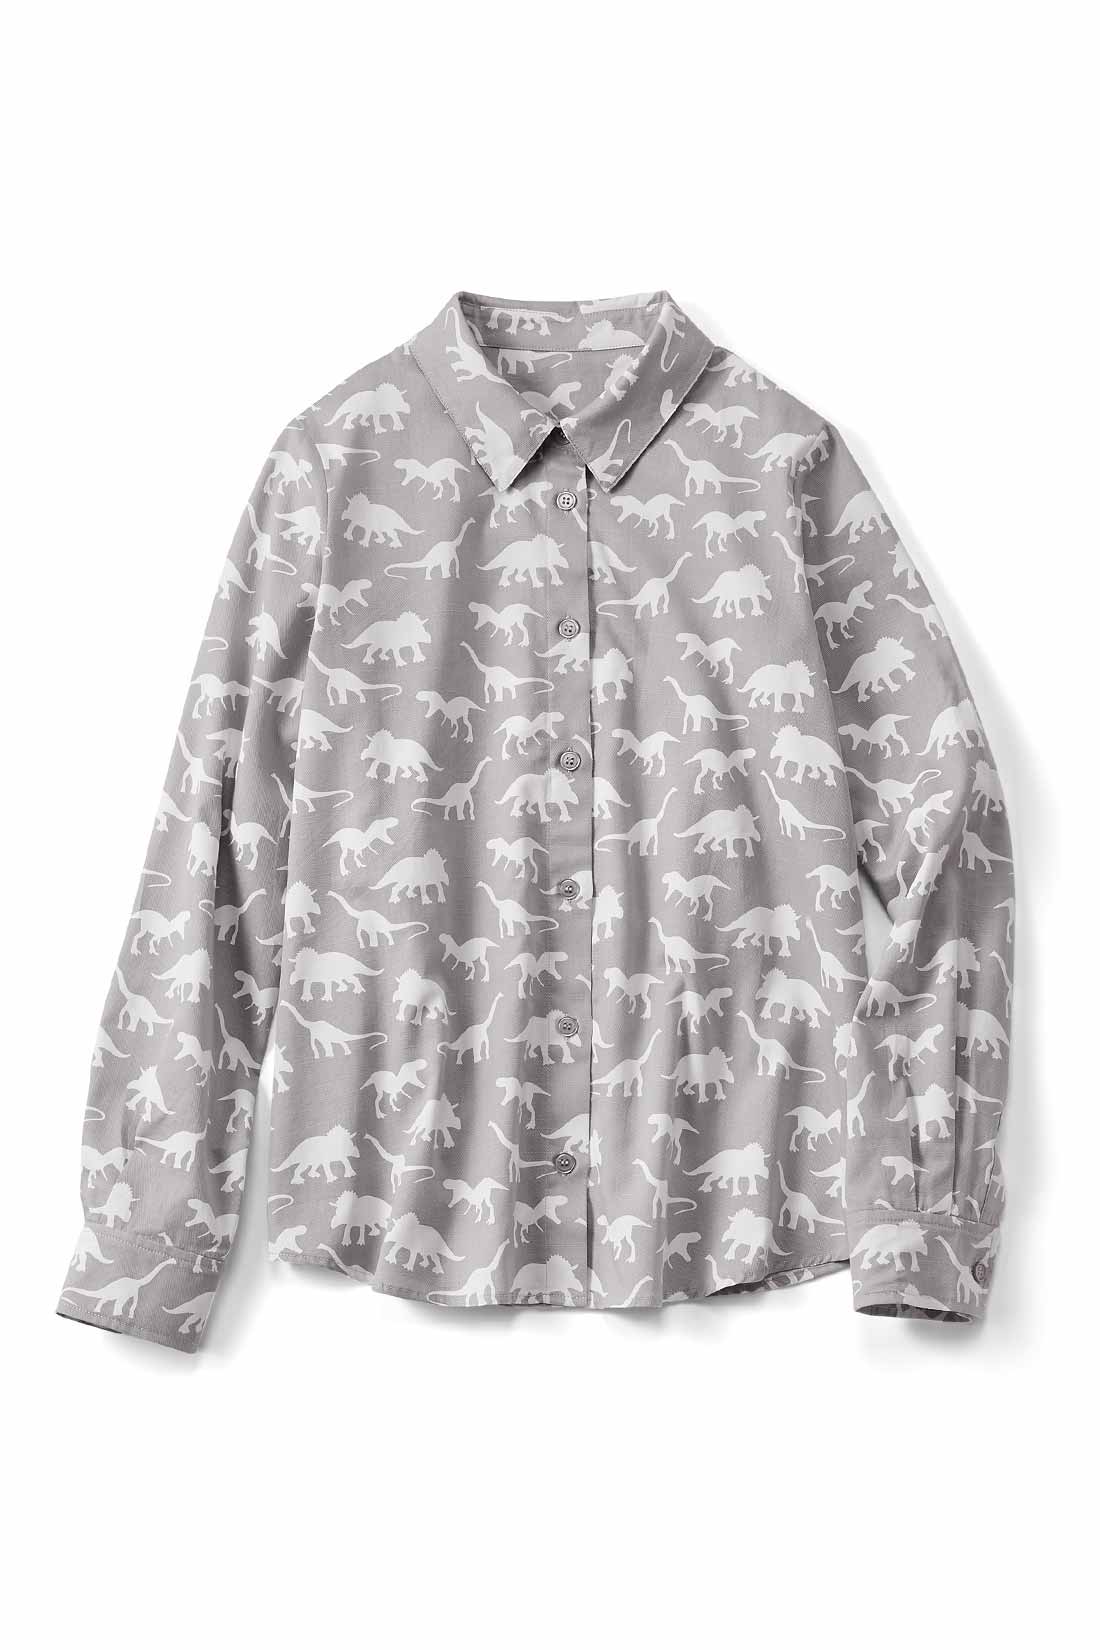 くすっと楽しい 恐竜柄シャツ シャツ ブラウス トップス レディースファッション レディースファッション 雑貨のアウトレット通販 Real Stock